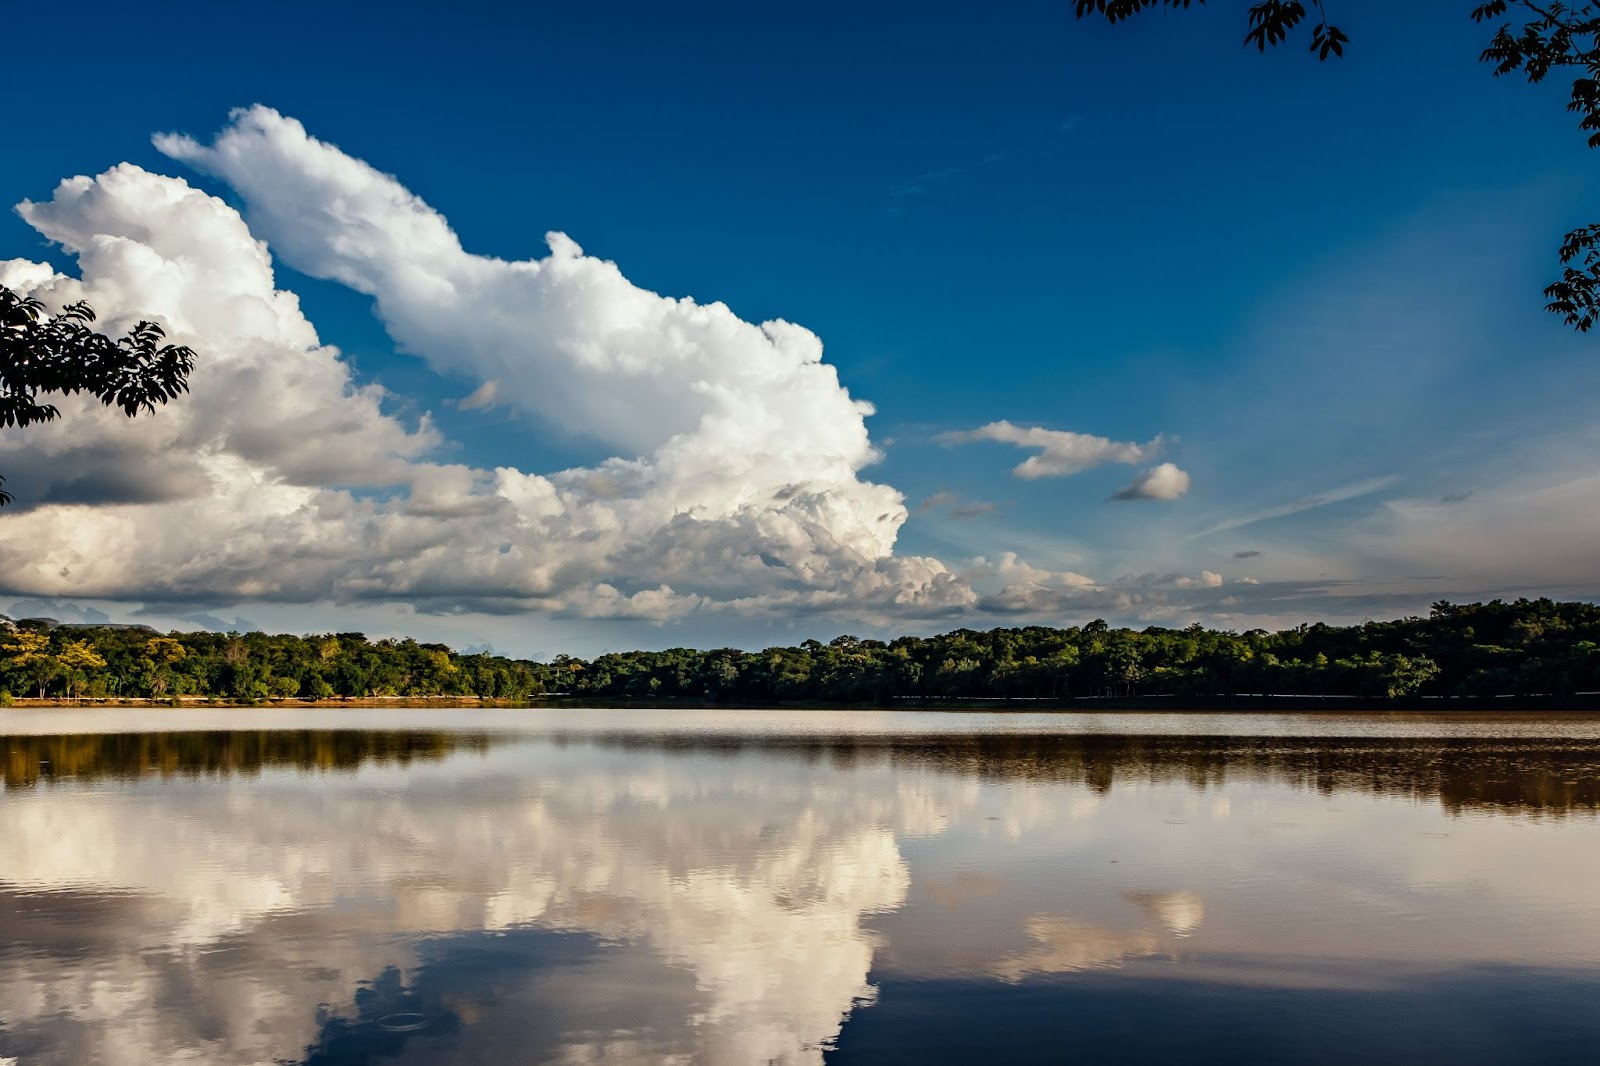 Foto do lago do Parque Cesamar. Água refletindo o céu, com grande nuvem branca em um céu azul